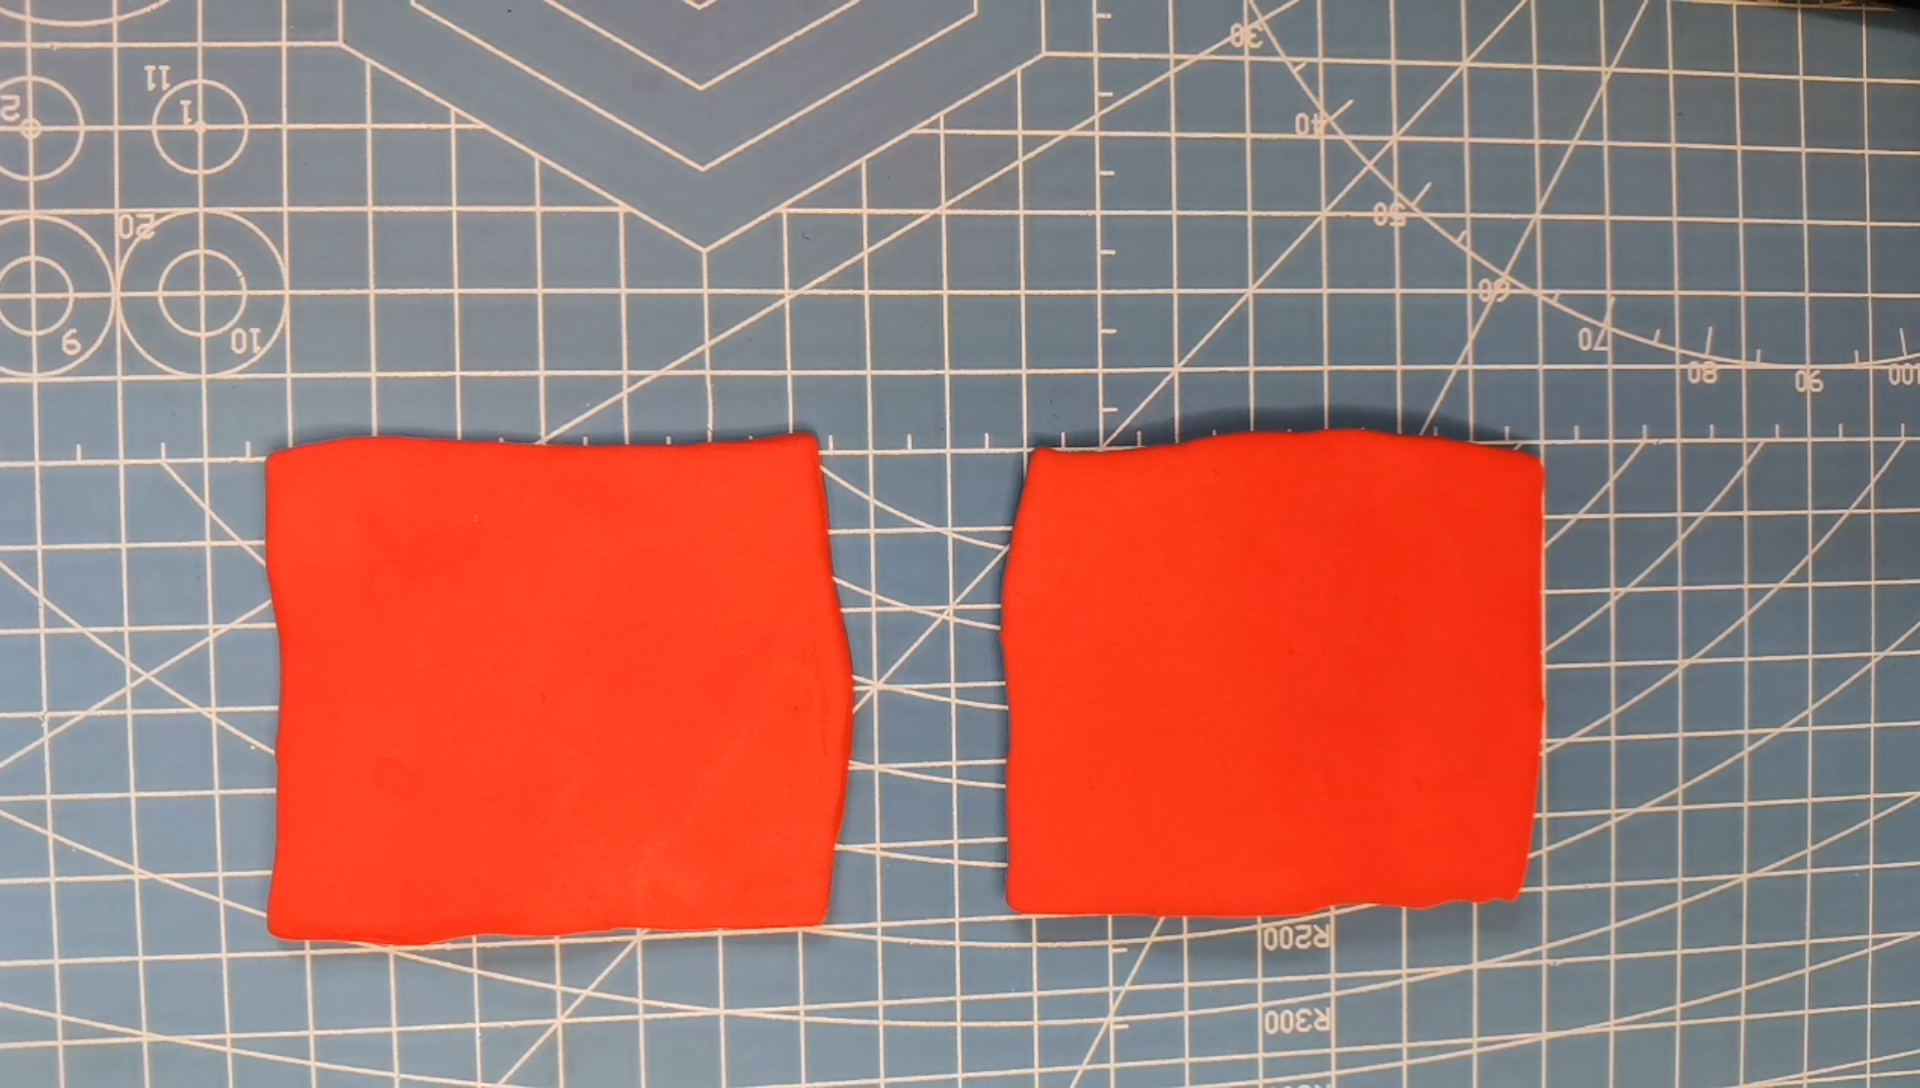 2用红色橡皮泥做出两个方形.